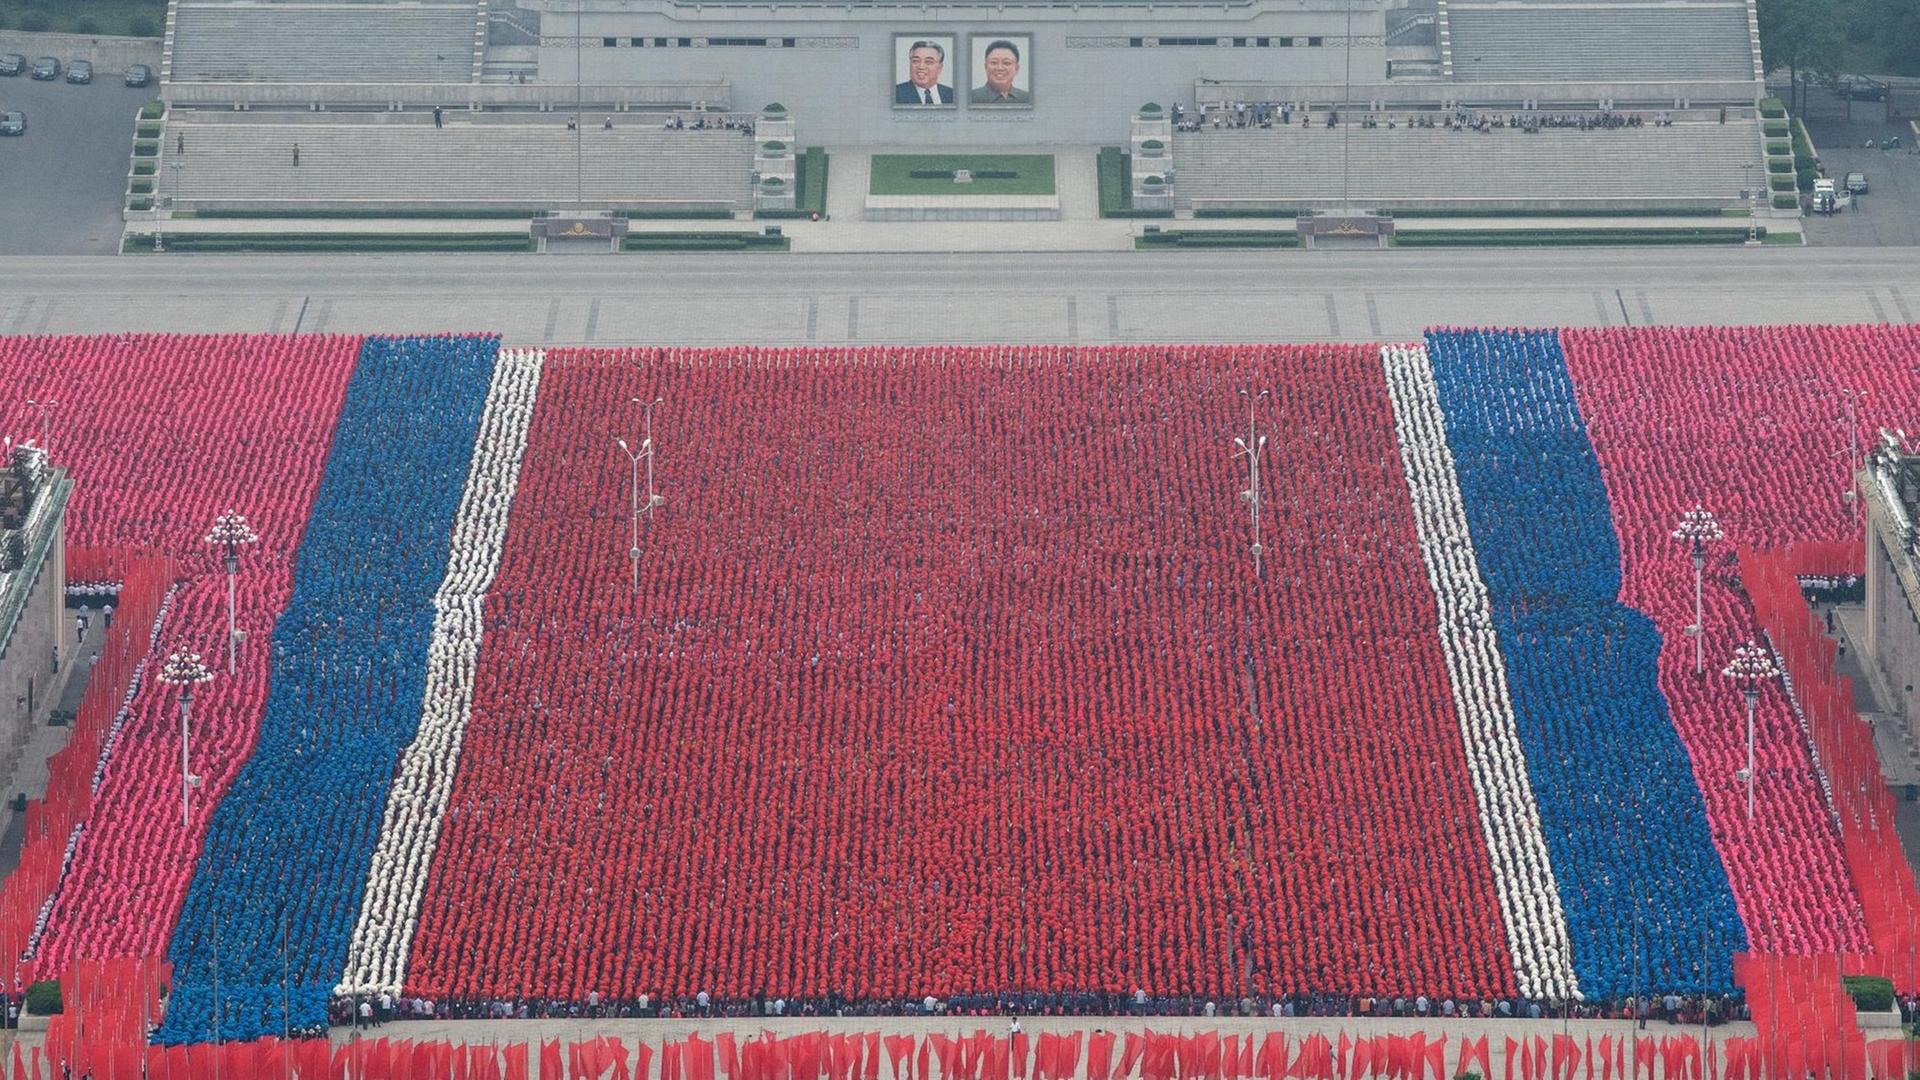 Das Bild zeigt Proben für die Feierlichkeiten zum 70. Jahrestag der Gründung Nordkoreas am 19. August 2018 auf dem Kim-Il-Sung-Platz in Pjöngjang, Nordkorea. Tausende nahmen daran teil.